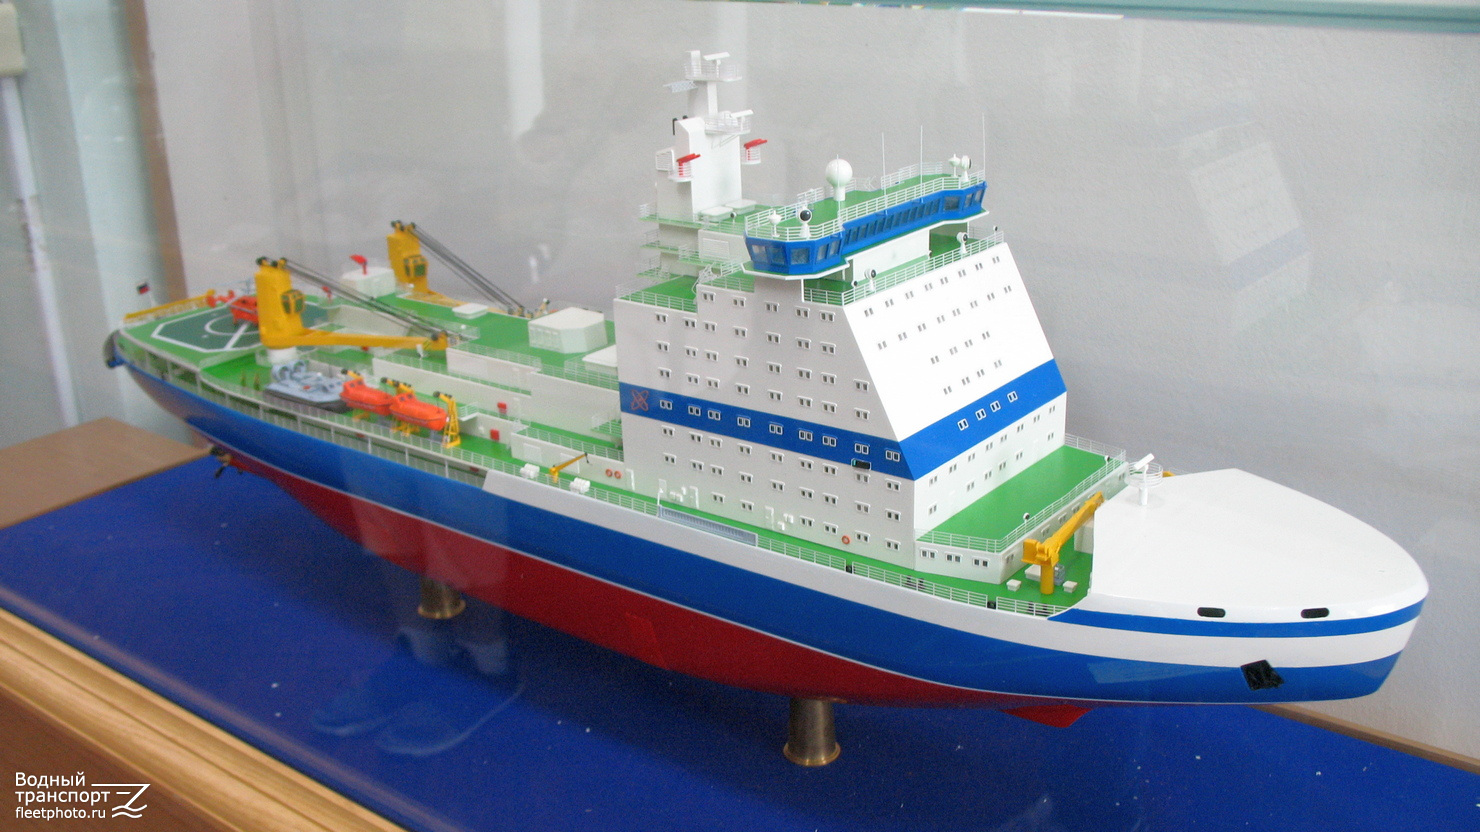 Проекты гражданских судов. Макет Арктики. Авито модели гражданские корабли копии.